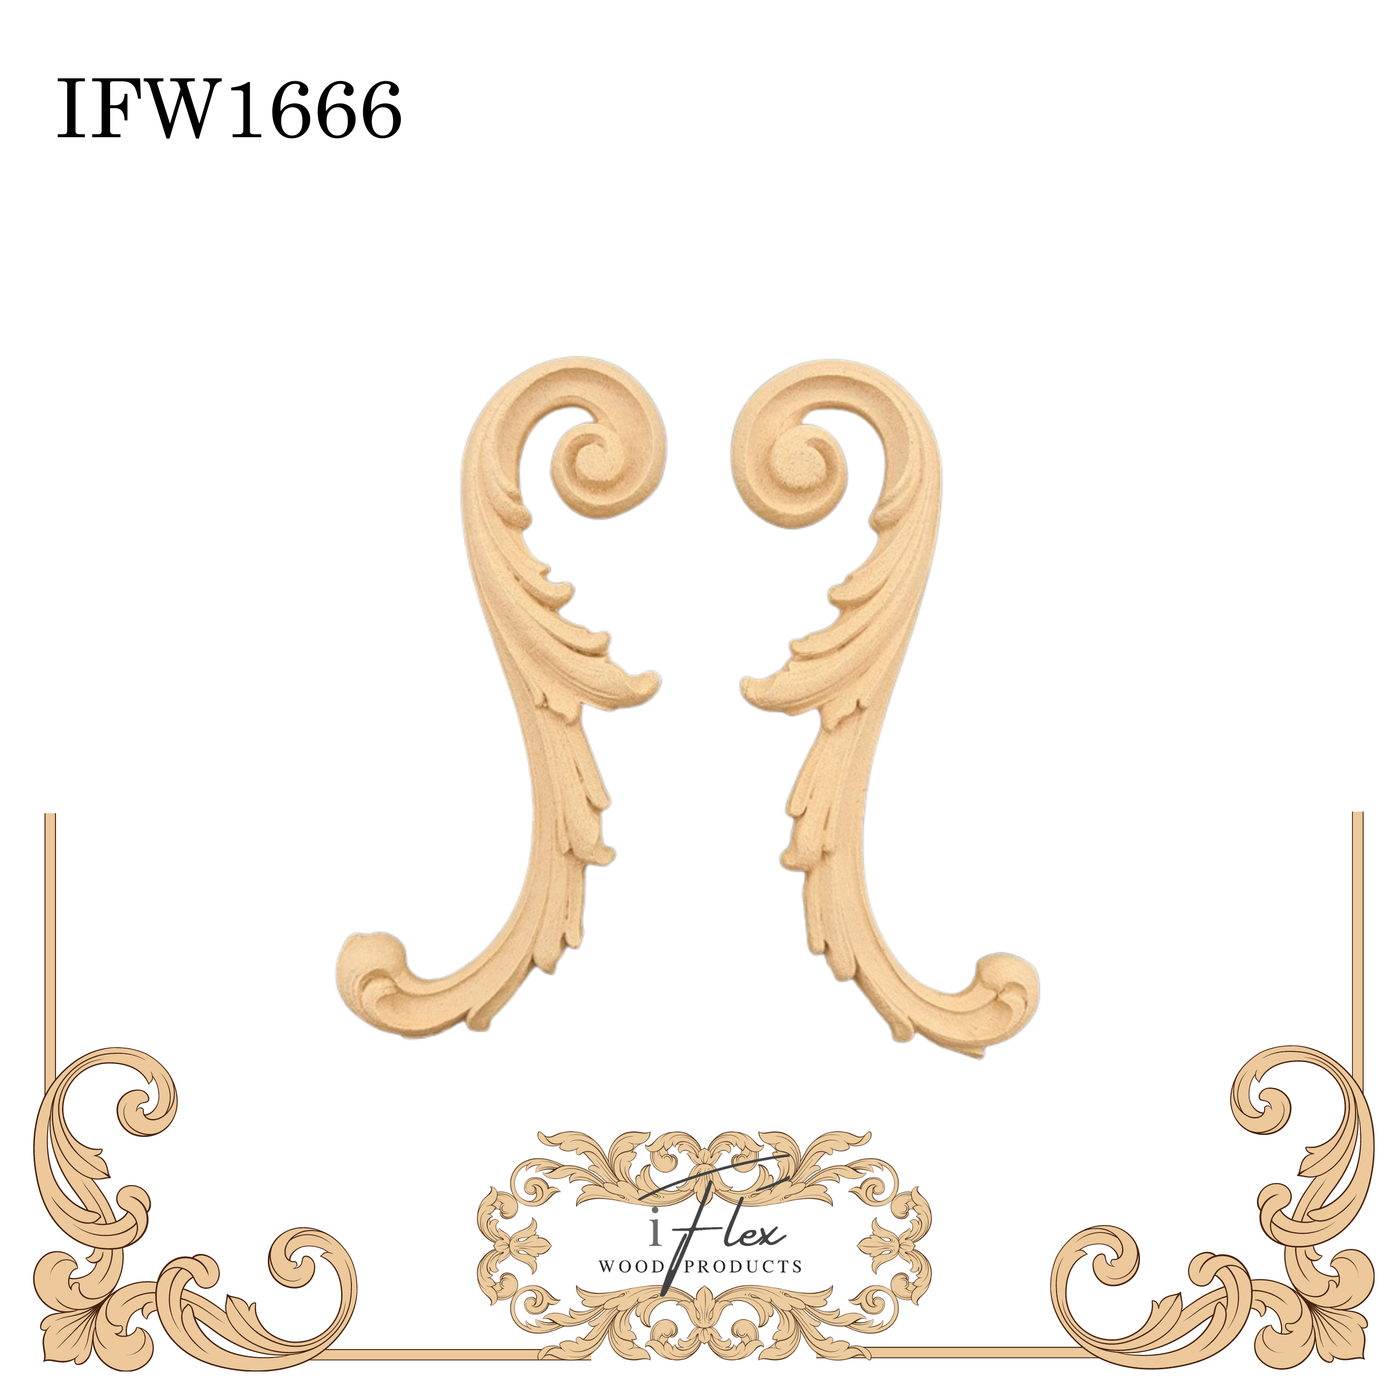 IFW 1666